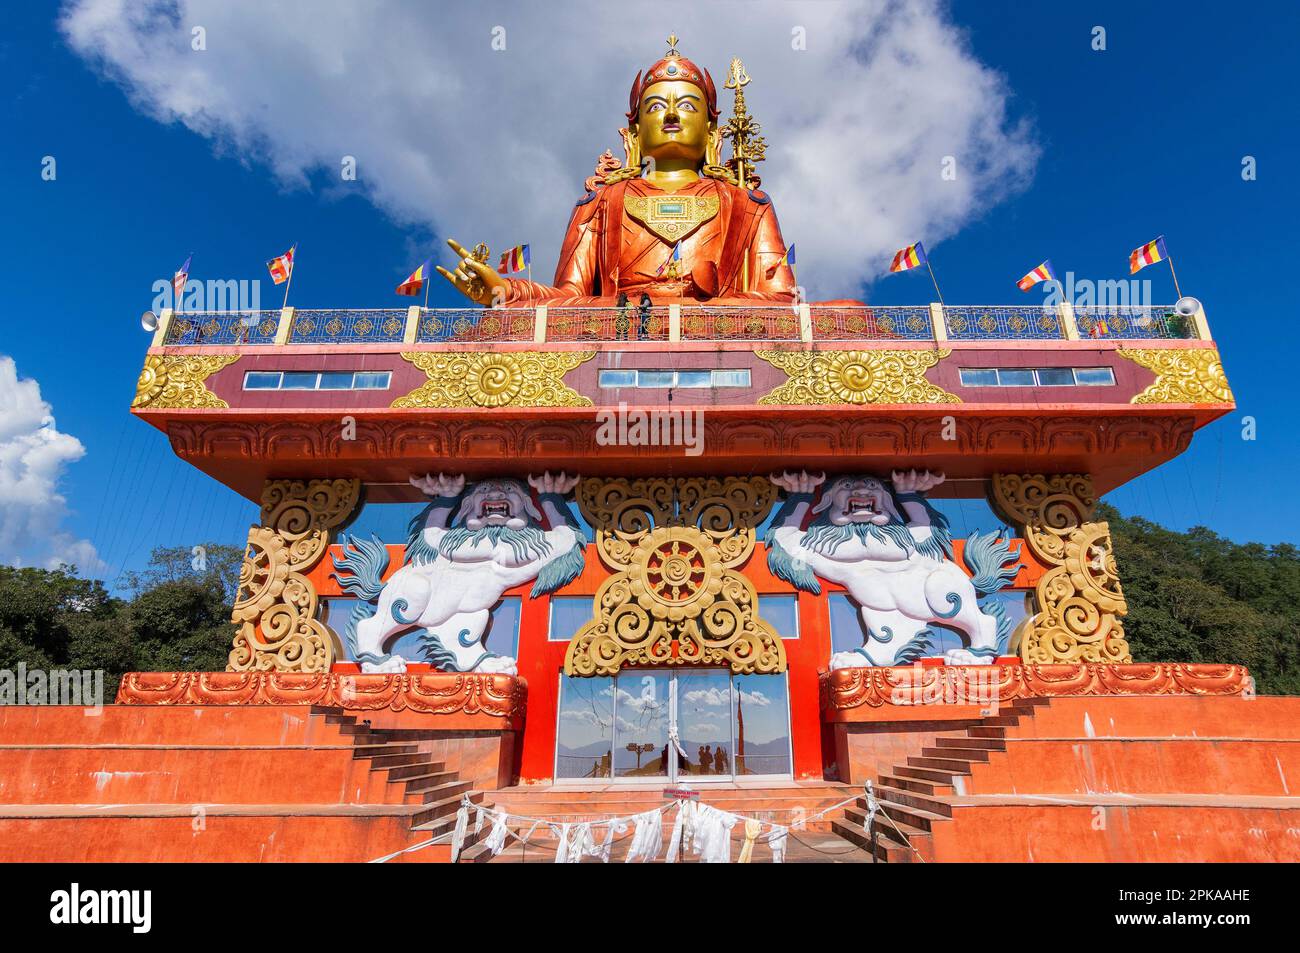 La Sainte statue de Guru Padmasambhava ou née d'un lotus, Guru Rinpoché, était un maître bouddhiste indien tantrique Vajra qui enseignait Vajrayana au Tibet. Banque D'Images